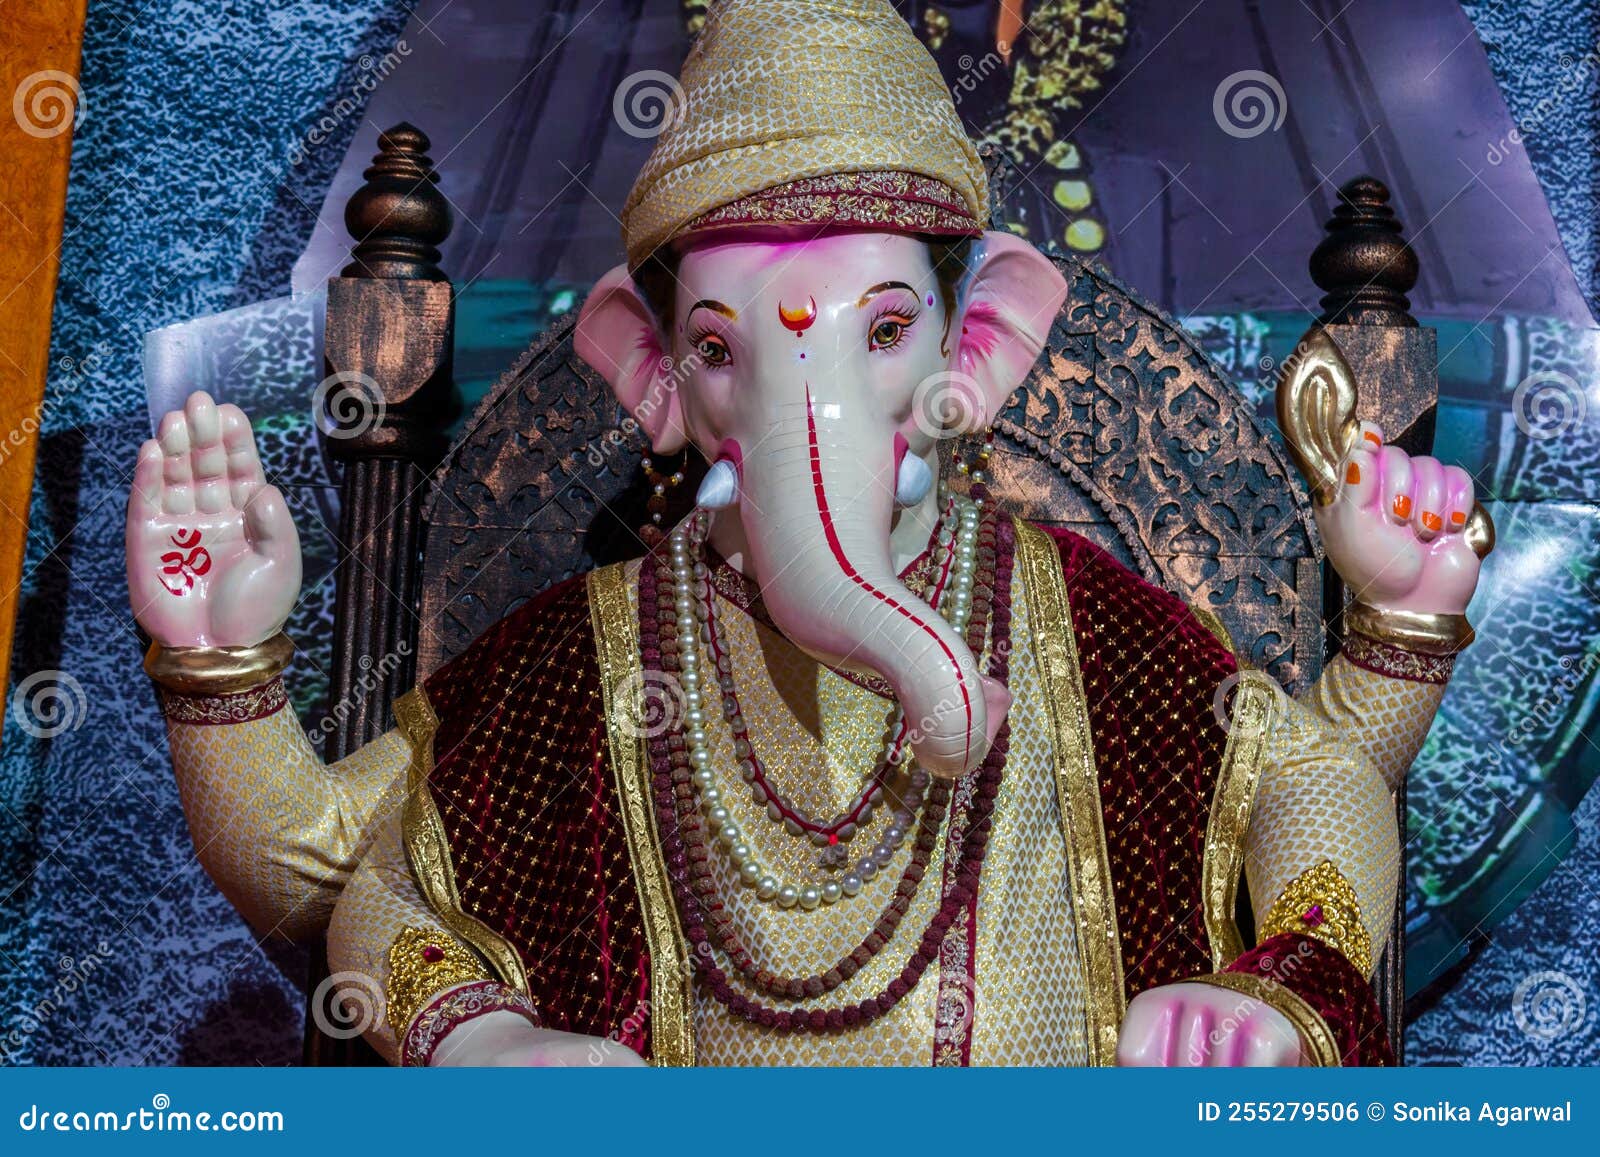 A Beautiful Idol of Lord Ganesha Stock Photo - Image of beauty ...